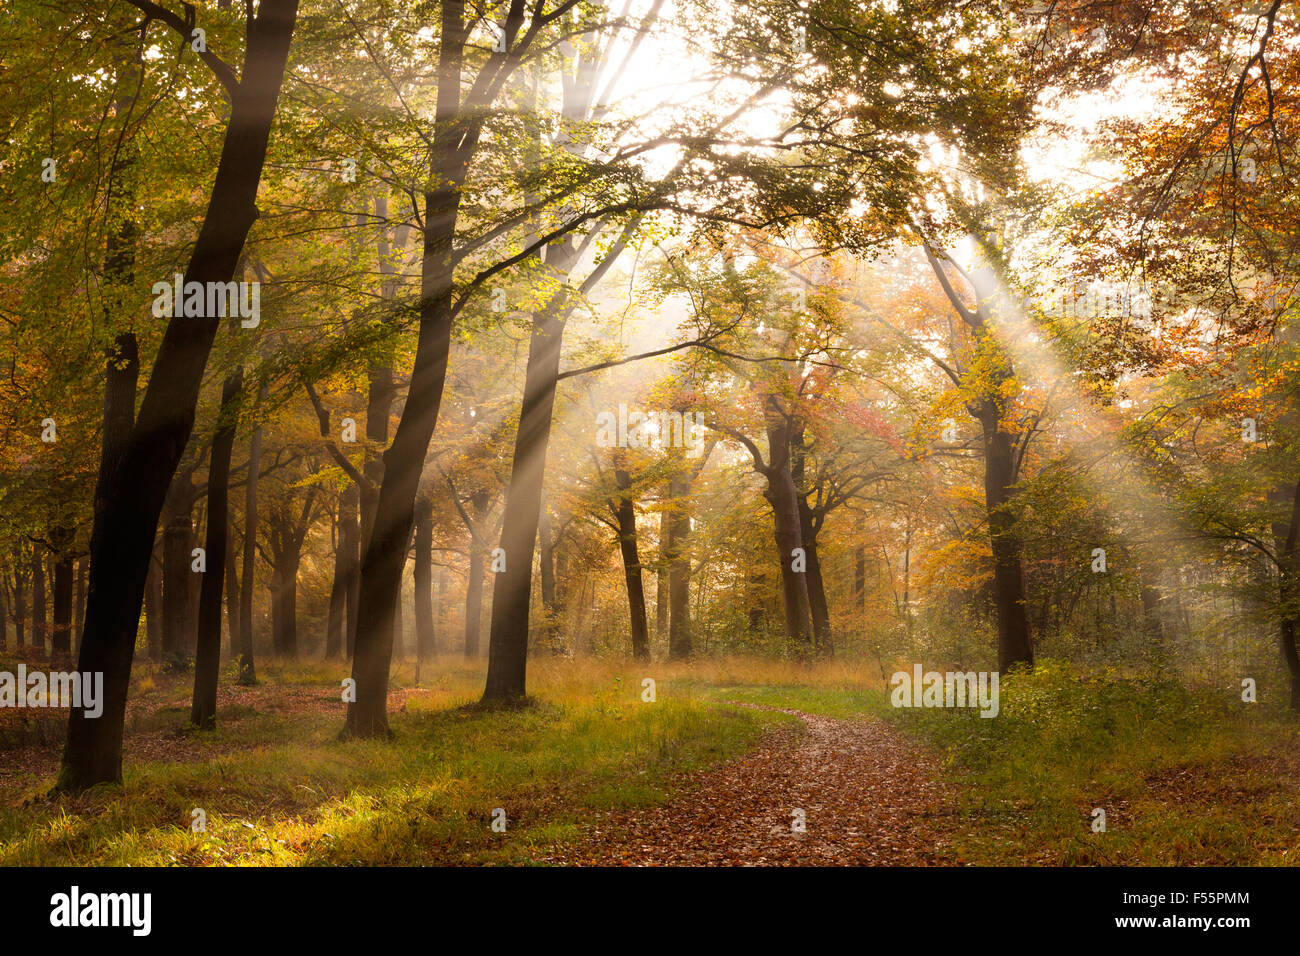 La luz del sol a través de los árboles en el bosque durante el otoño Foto de stock